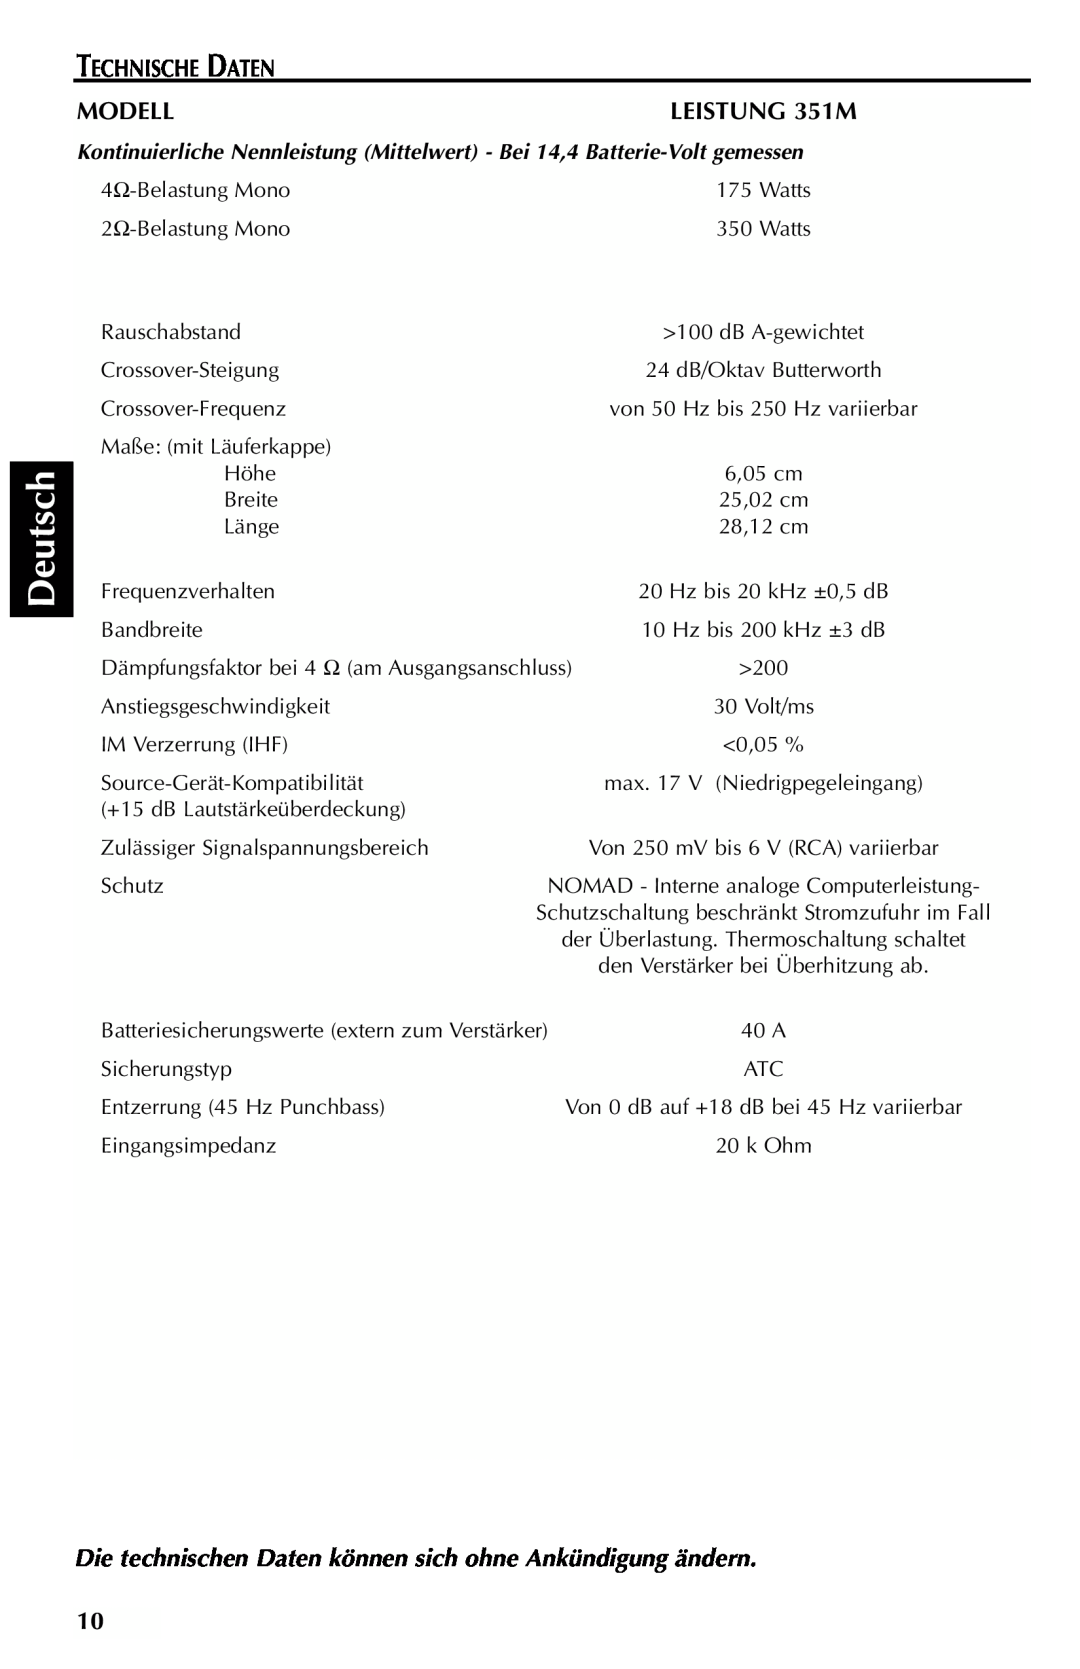 Rockford Fosgate manual Deutsch, Technische Daten, Modell, LEISTUNG 351M 